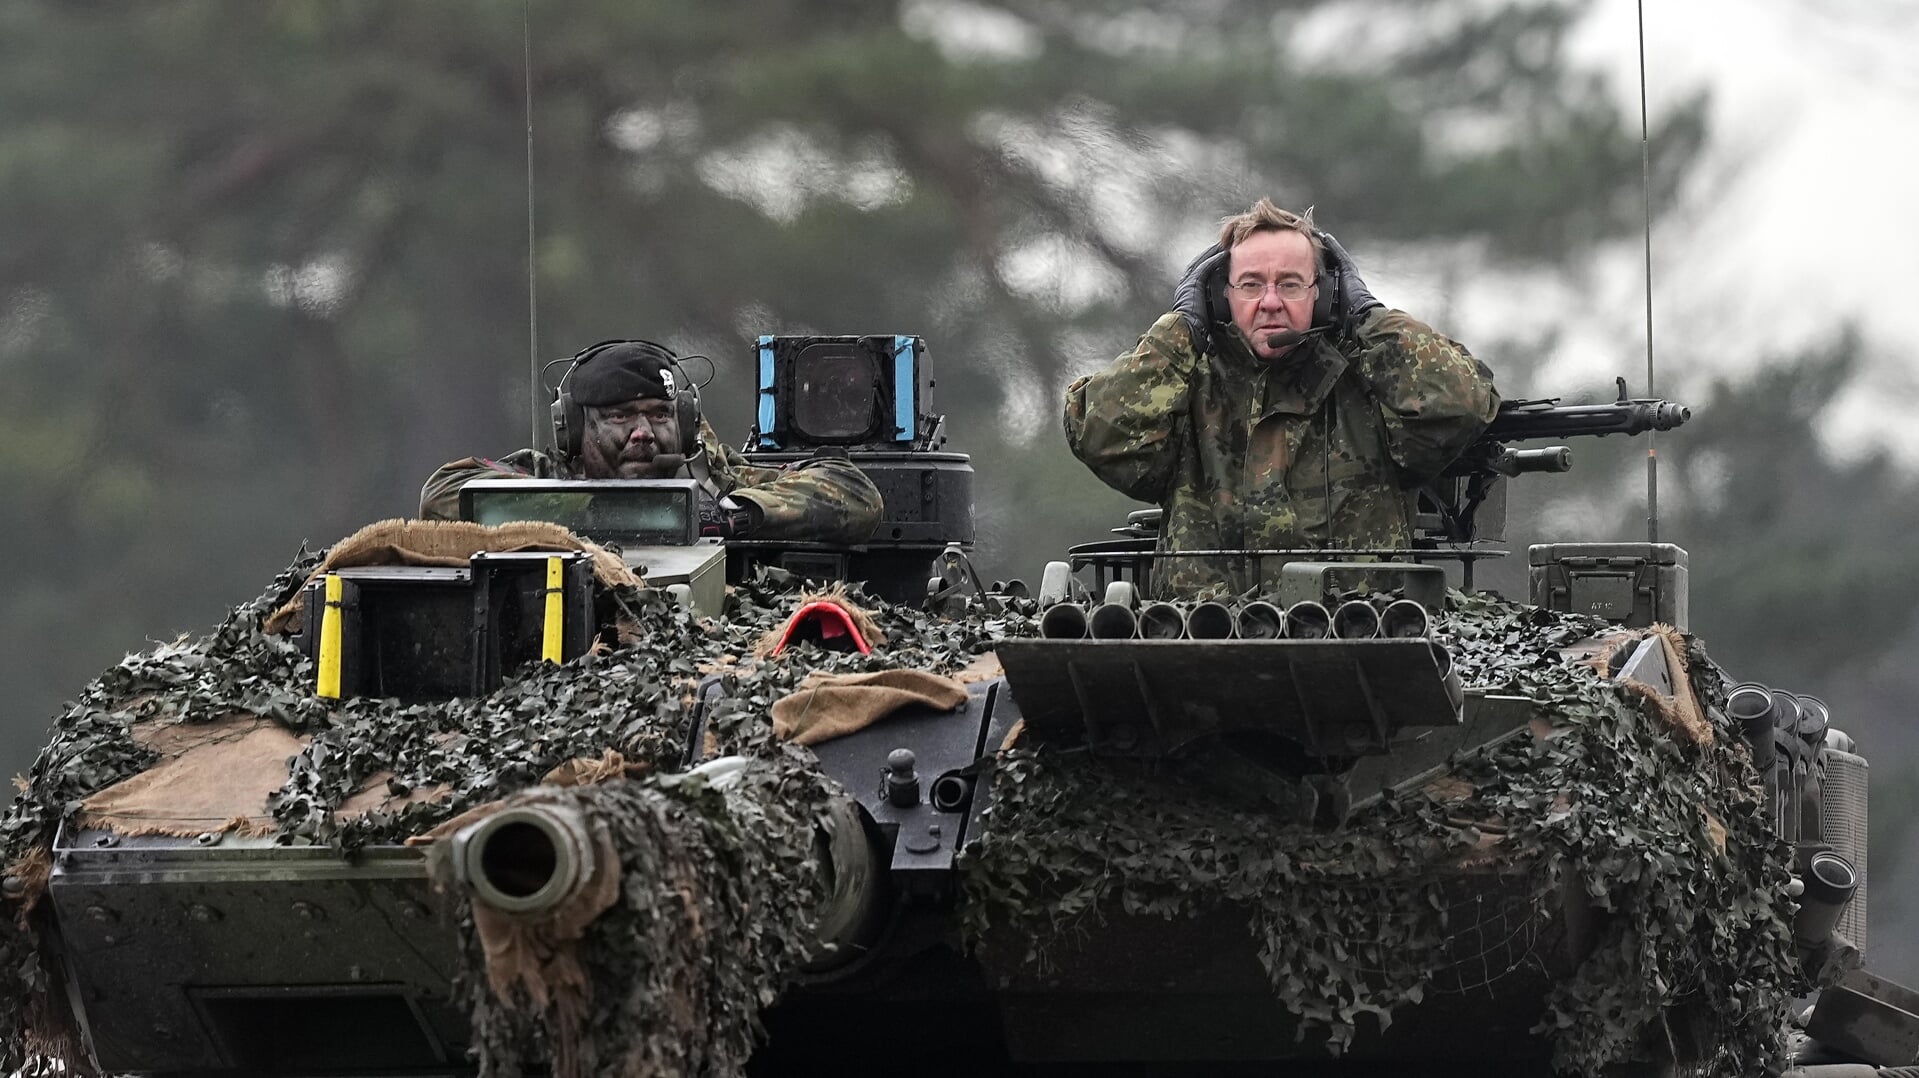 De Duitse minister van Defensie, Boris Pistorius, rijdt mee op een Leopard 2-tank. De regering in Berlijn wil fors meer uitgeven aan defensiematerieel, vooral van producenten in eigen land.